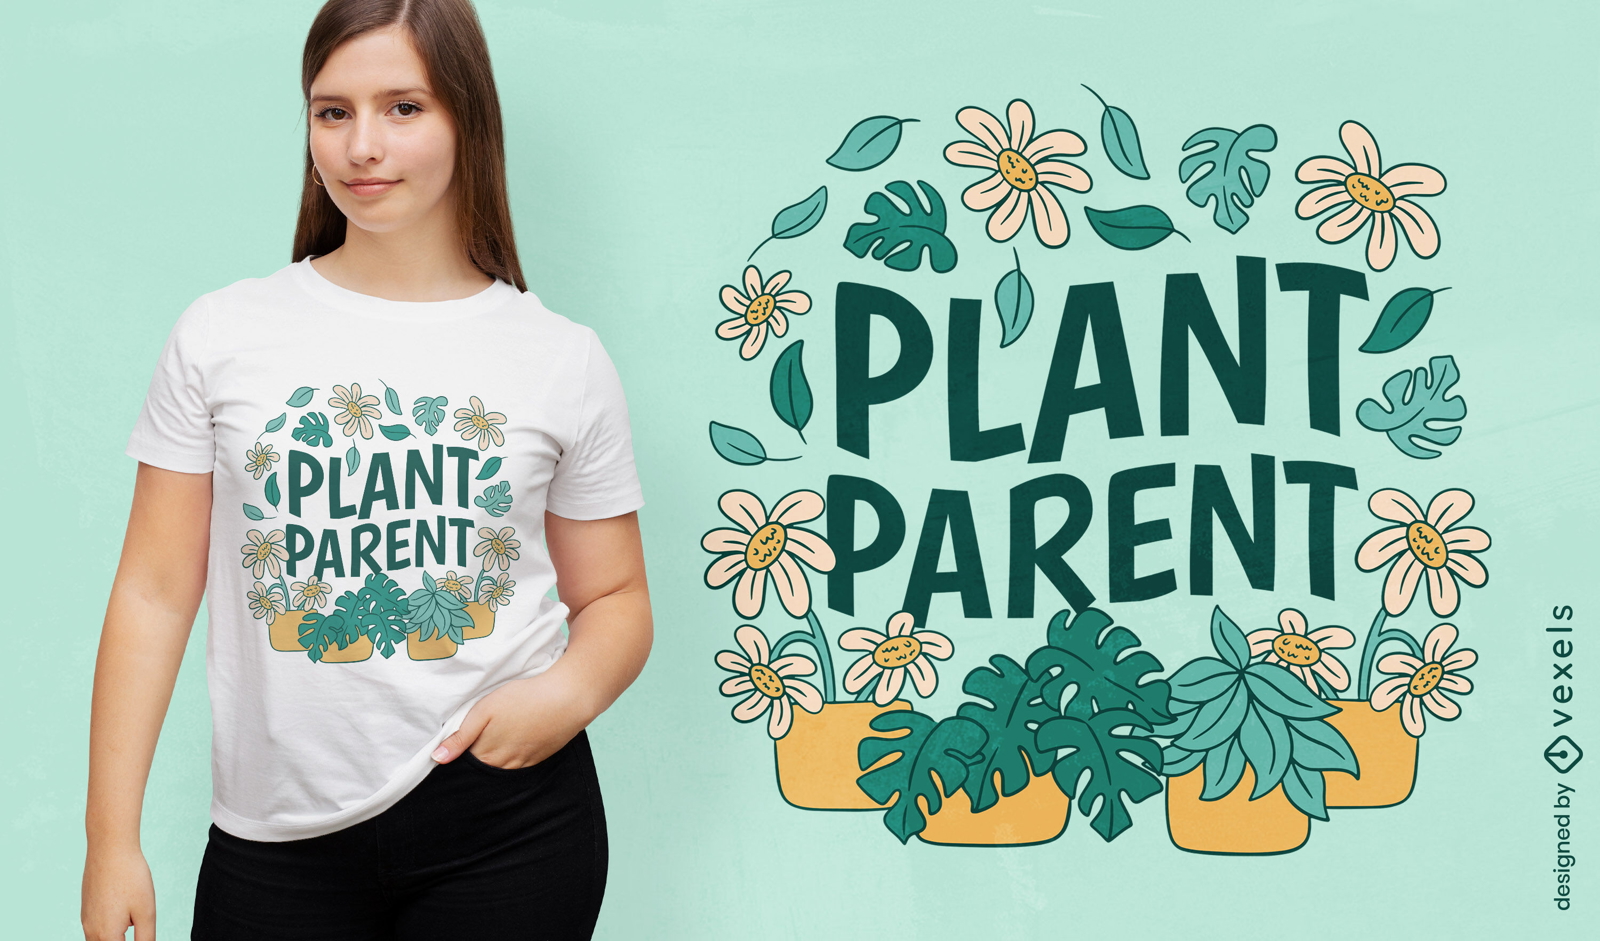 Plant parent quote color stroke t-shirt design